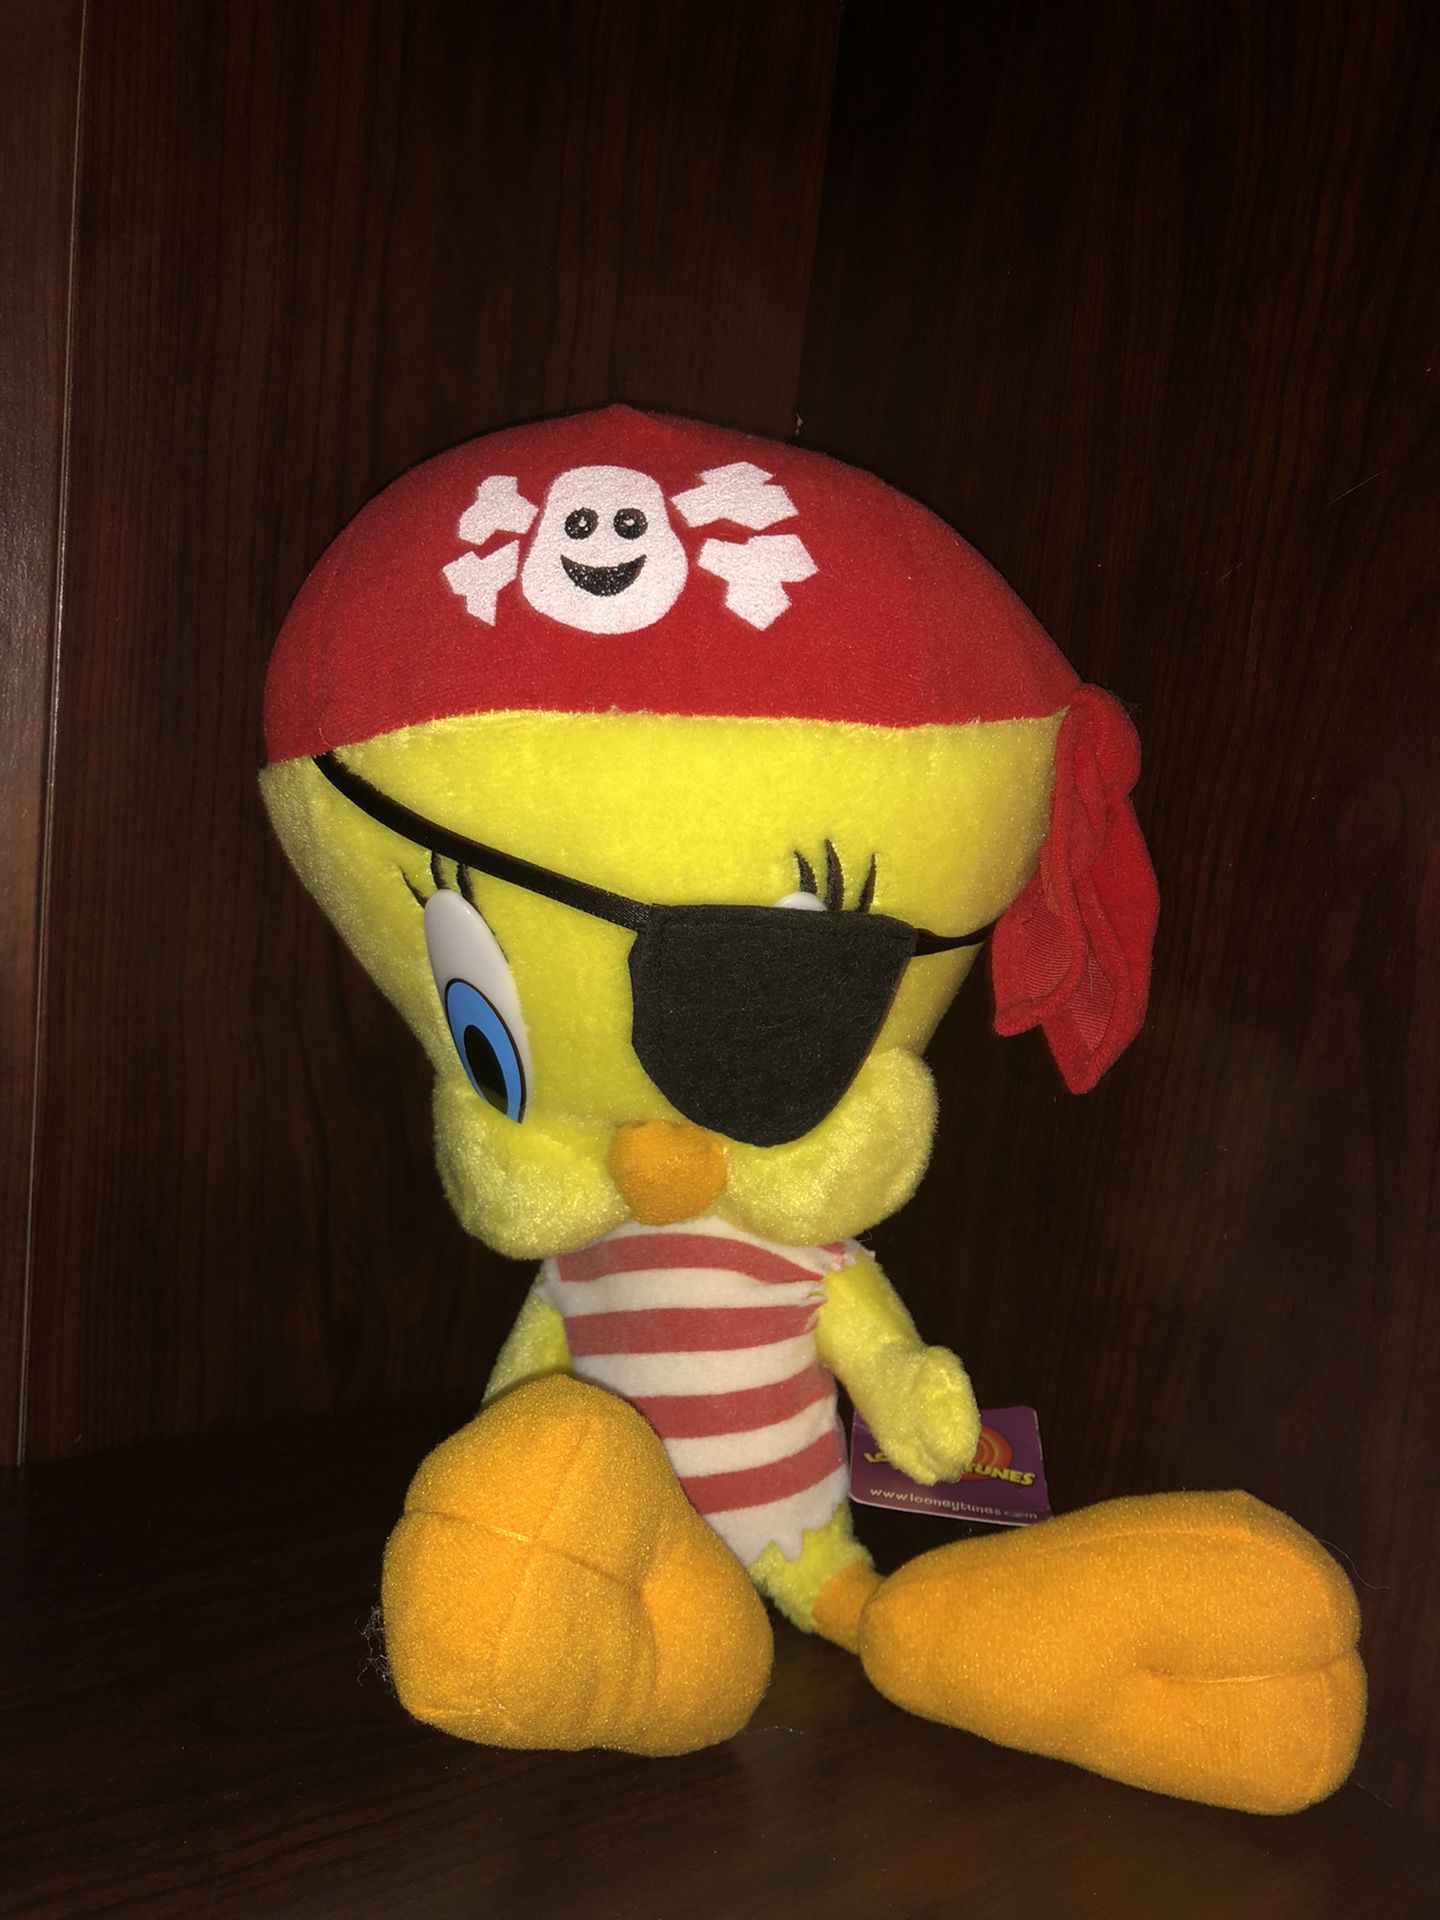 Vintage 2002 Pirate 🏴‍☠️ Tweety Bird Looney Tunes plush plushie doll NWT - 2002 Tweety Bird sailor pirate awe matey! Eye patch ! large 14” tall